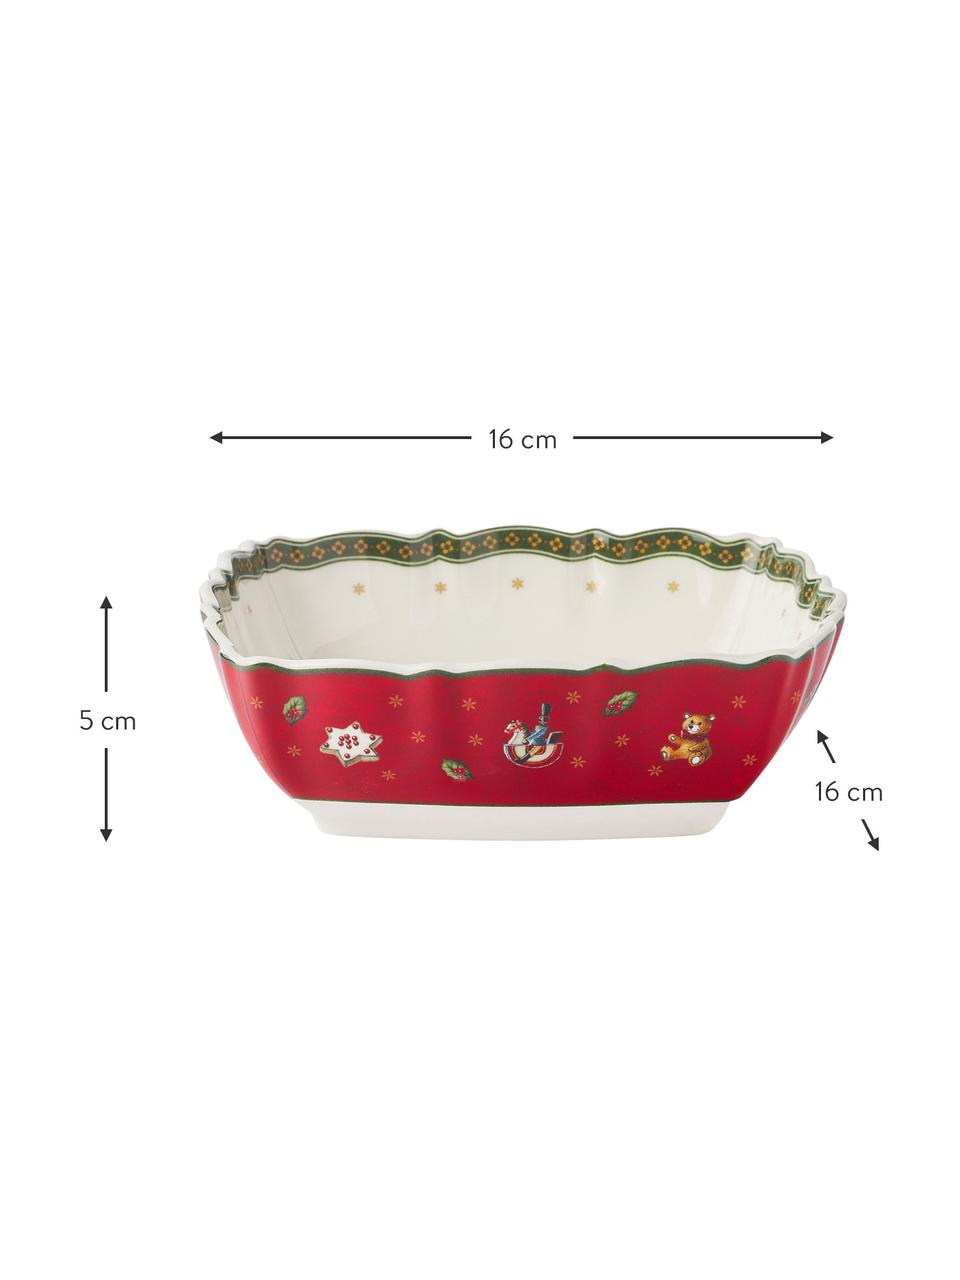 Porzellan-Schale Delight mit Weihnachtsdekor, Premium Porzellan, Weiß, Grün, Rot, gemustert, B 16 x H 5 cm